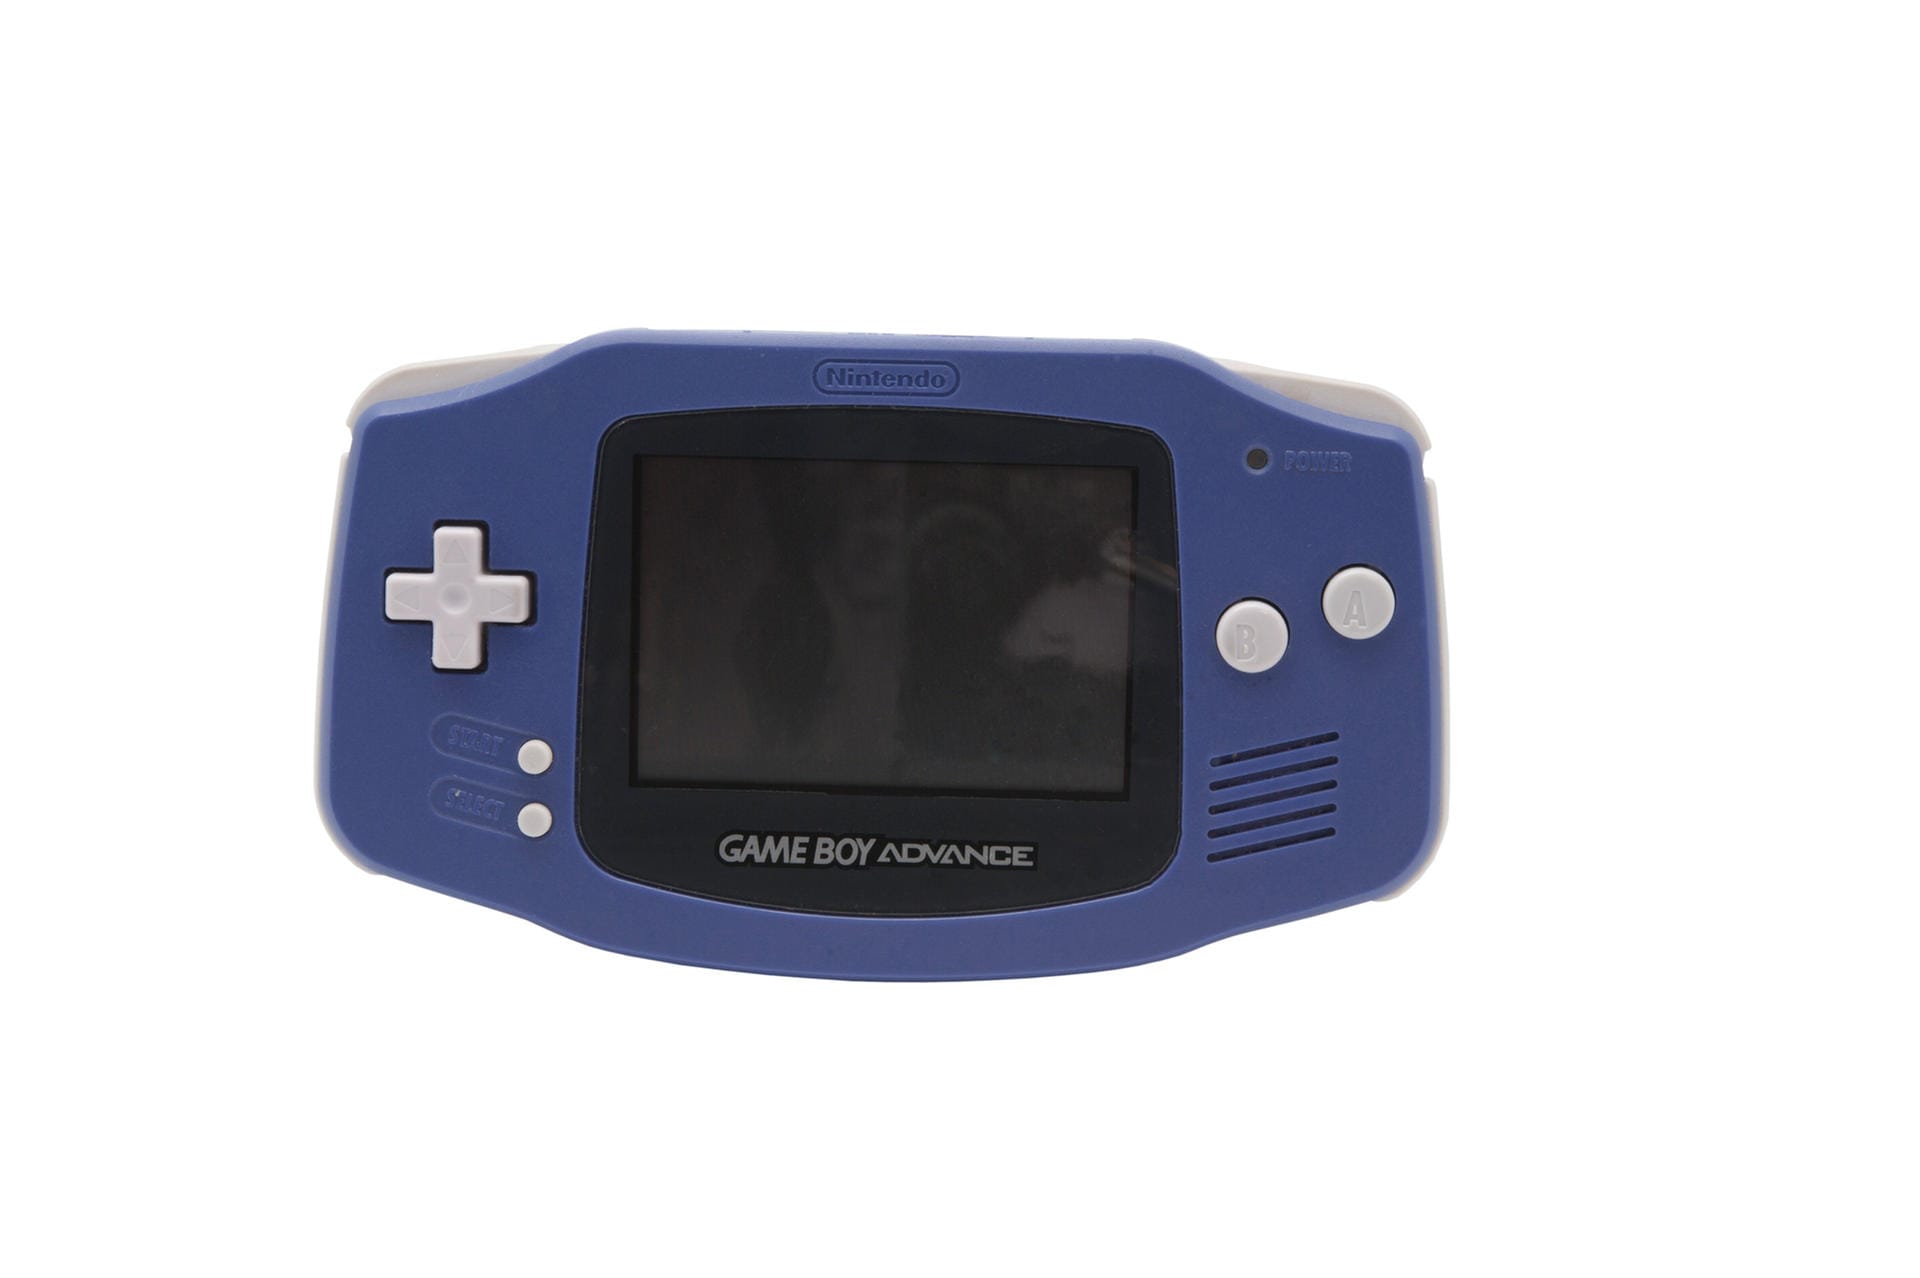 Der Game Boy Advance erschien 2001 und war Nintendos erste Handheld-Konsole, die nicht auf der Technik des Game Boy basierte. Das Gerät bot eine bessere Grafik als die Vorgänger sowie Stereo-Sound per Kopfhörer. Der Game Boy Advance konnte alle alten Game-Boy-Spiele wiedergeben. Nintendo verkaufte etwa 81 Millionen Geräte weltweit.